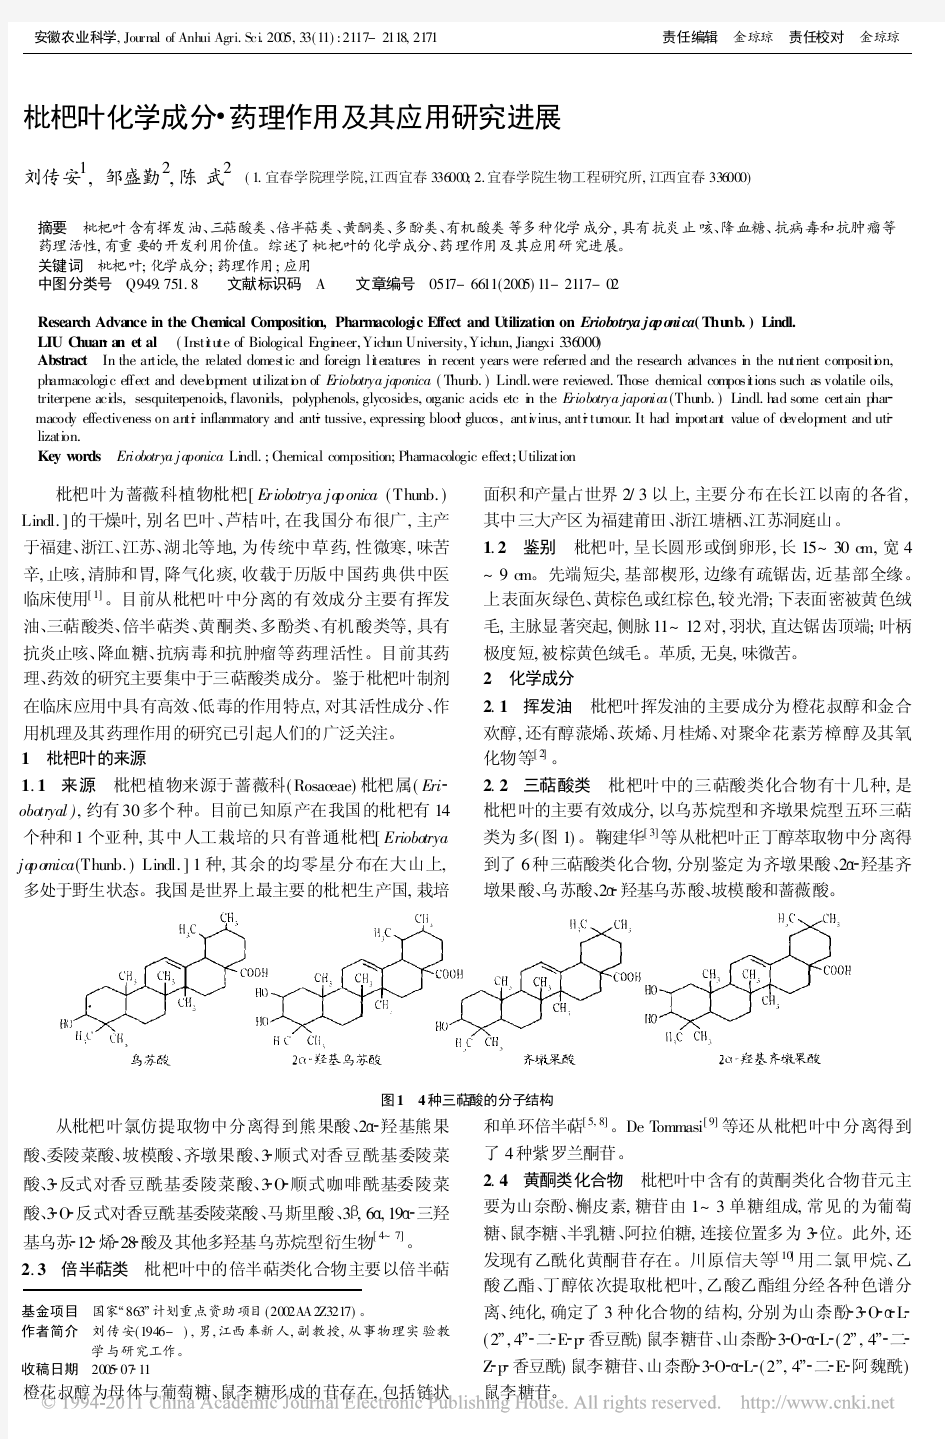 枇杷叶化学成分_药理作用及其应用研究进展_刘传安